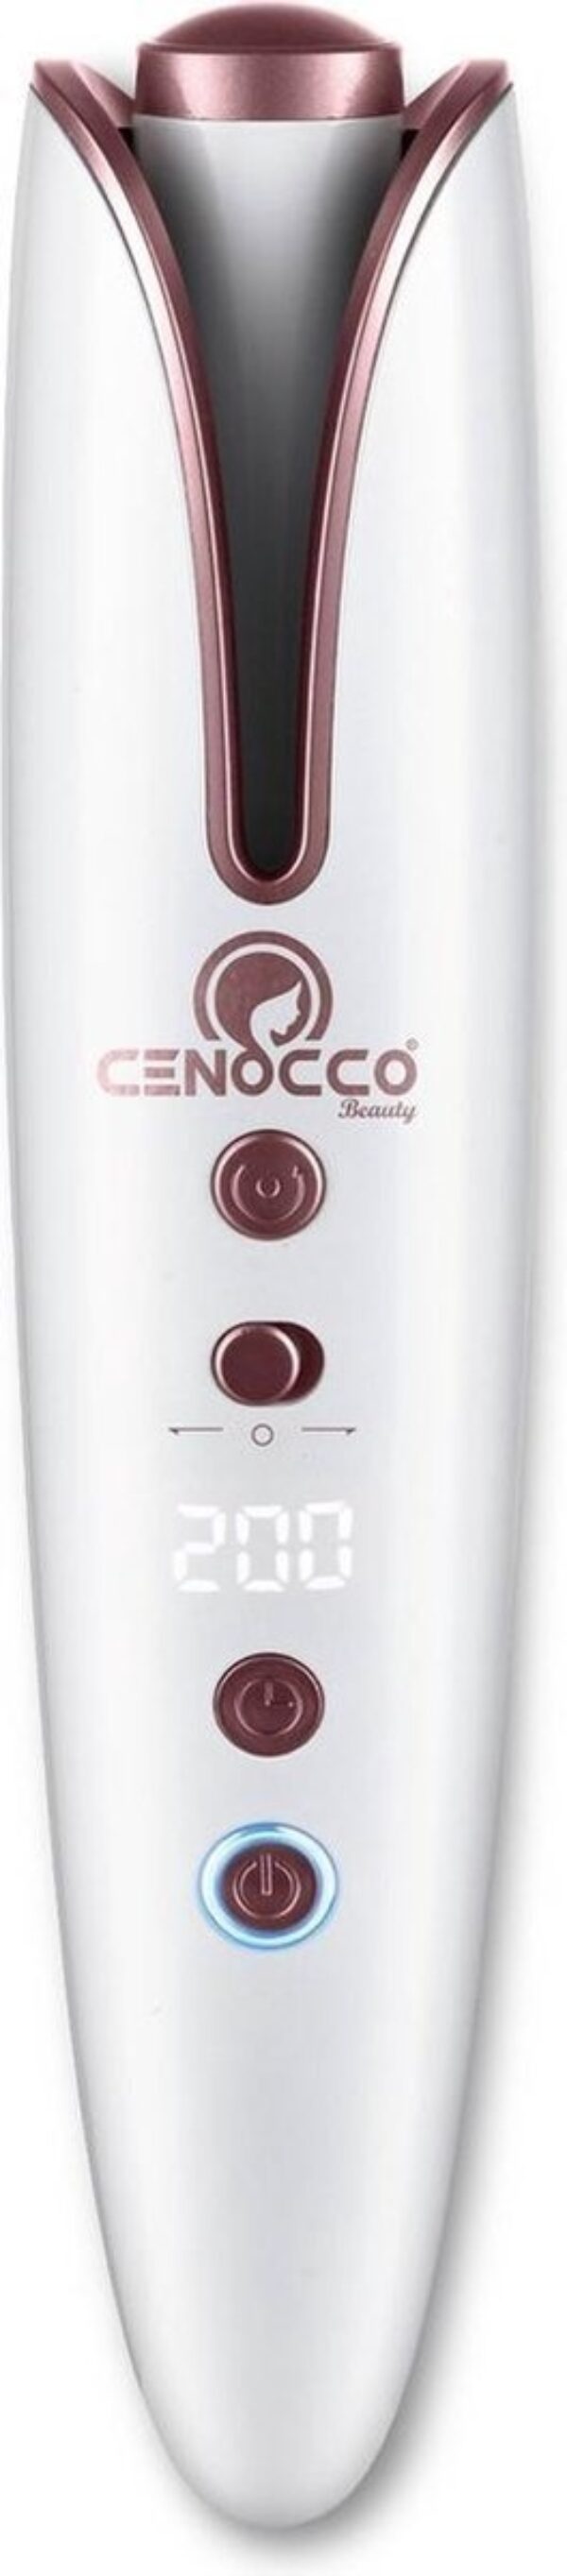 Cenocco Beauty Kabelloser wiederaufladbarer automatischer Lockenstab - CC-9094